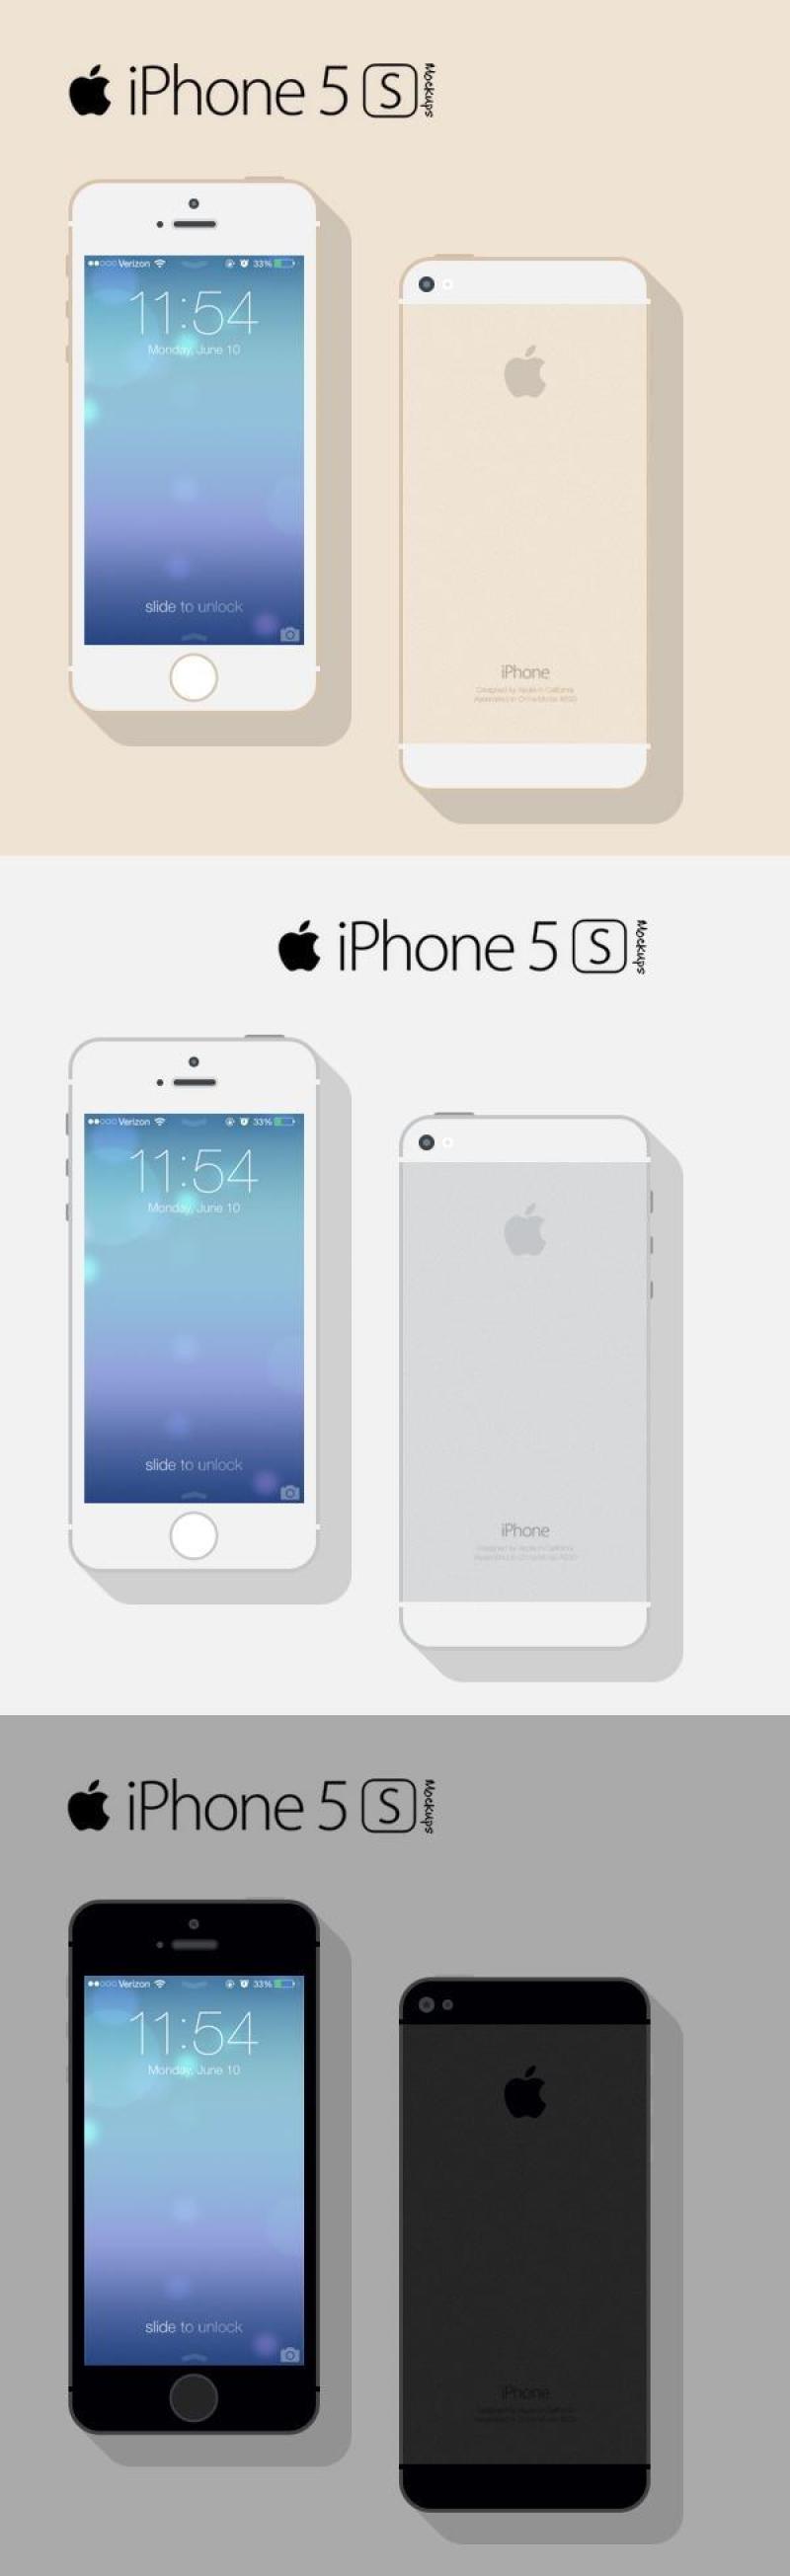 iPhone 5S 平面模型